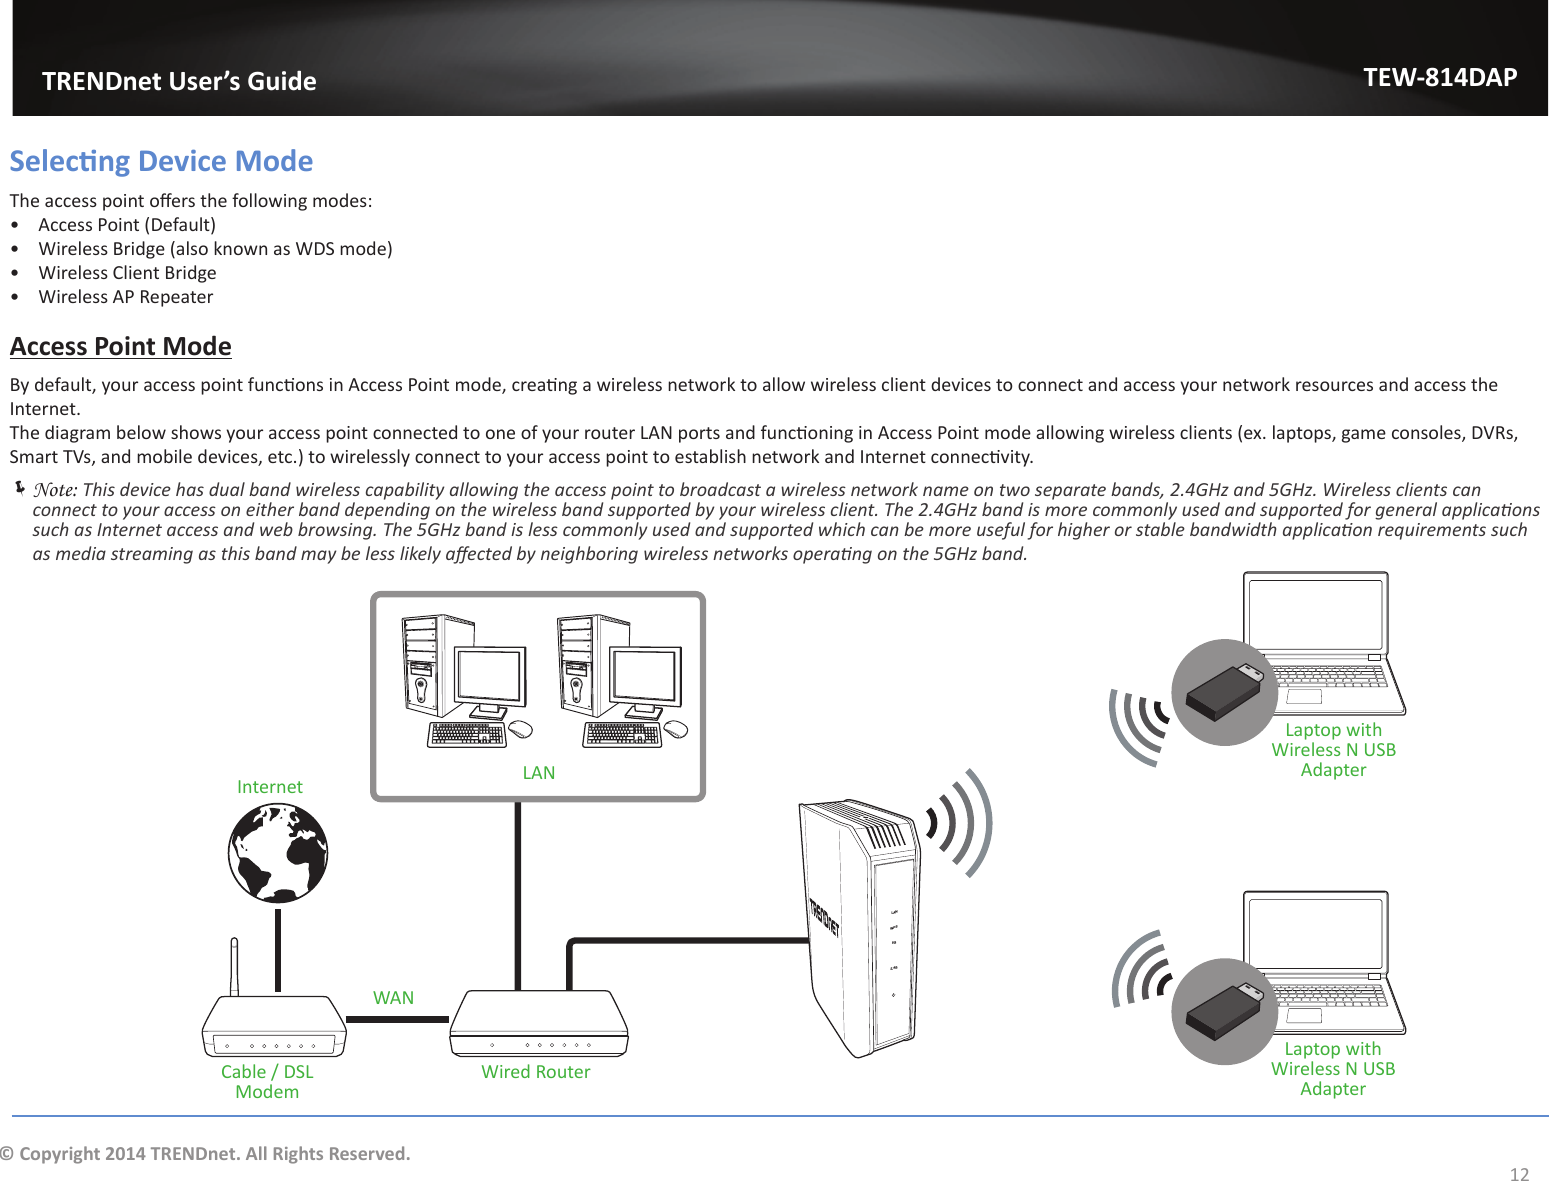                                 TRENDnet User’s GuideTEW-814DAP12© Copyright 2014 TRENDnet. All Rights Reserved.^ĞůĞĐƟŶŐĞǀŝĐĞDŽĚĞdŚĞĂĐĐĞƐƐƉŽŝŶƚŽīĞƌƐƚŚĞĨŽůůŽǁŝŶŐŵŽĚĞƐ͗ͻ Access Point (Default)ͻ Wireless Bridge (also known as WDS mode)ͻ Wireless Client Bridgeͻ Wireless AP RepeaterAccess Point ModeǇĚĞĨĂƵůƚ͕ǇŽƵƌĂĐĐĞƐƐƉŽŝŶƚĨƵŶĐƟŽŶƐŝŶĐĐĞƐƐWŽŝŶƚŵŽĚĞ͕ĐƌĞĂƟŶŐĂǁŝƌĞůĞƐƐŶĞƚǁŽƌŬƚŽĂůůŽǁǁŝƌĞůĞƐƐĐůŝĞŶƚĚĞǀŝĐĞƐƚŽĐŽŶŶĞĐƚĂŶĚĂĐĐĞƐƐǇŽƵƌŶĞƚǁŽƌŬƌĞƐŽƵƌĐĞƐĂŶĚĂĐĐĞƐƐƚŚĞInternet.dŚĞĚŝĂŐƌĂŵďĞůŽǁƐŚŽǁƐǇŽƵƌĂĐĐĞƐƐƉŽŝŶƚĐŽŶŶĞĐƚĞĚƚŽŽŶĞŽĨǇŽƵƌƌŽƵƚĞƌ&gt;EƉŽƌƚƐĂŶĚĨƵŶĐƟŽŶŝŶŐŝŶĐĐĞƐƐWŽŝŶƚŵŽĚĞĂůůŽǁŝŶŐǁŝƌĞůĞƐƐĐůŝĞŶƚƐ;Ğǆ͘ůĂƉƚŽƉƐ͕ŐĂŵĞĐŽŶƐŽůĞƐ͕sZƐ͕^ŵĂƌƚdsƐ͕ĂŶĚŵŽďŝůĞĚĞǀŝĐĞƐ͕ĞƚĐ͘ͿƚŽǁŝƌĞůĞƐƐůǇĐŽŶŶĞĐƚƚŽǇŽƵƌĂĐĐĞƐƐƉŽŝŶƚƚŽĞƐƚĂďůŝƐŚŶĞƚǁŽƌŬĂŶĚ/ŶƚĞƌŶĞƚĐŽŶŶĞĐƟǀŝƚǇ͘ ÍNote: dŚŝƐĚĞǀŝĐĞŚĂƐĚƵĂůďĂŶĚǁŝƌĞůĞƐƐĐĂƉĂďŝůŝƚǇĂůůŽǁŝŶŐƚŚĞĂĐĐĞƐƐƉŽŝŶƚƚŽďƌŽĂĚĐĂƐƚĂǁŝƌĞůĞƐƐŶĞƚǁŽƌŬŶĂŵĞŽŶƚǁŽƐĞƉĂƌĂƚĞďĂŶĚƐ͕Ϯ͘ϰ&apos;,ǌĂŶĚϱ&apos;,ǌ͘tŝƌĞůĞƐƐĐůŝĞŶƚƐĐĂŶĐŽŶŶĞĐƚƚŽǇŽƵƌĂĐĐĞƐƐŽŶĞŝƚŚĞƌďĂŶĚĚĞƉĞŶĚŝŶŐŽŶƚŚĞǁŝƌĞůĞƐƐďĂŶĚƐƵƉƉŽƌƚĞĚďǇǇŽƵƌǁŝƌĞůĞƐƐĐůŝĞŶƚ͘dŚĞϮ͘ϰ&apos;,ǌďĂŶĚŝƐŵŽƌĞĐŽŵŵŽŶůǇƵƐĞĚĂŶĚƐƵƉƉŽƌƚĞĚĨŽƌŐĞŶĞƌĂůĂƉƉůŝĐĂƟŽŶƐƐƵĐŚĂƐ/ŶƚĞƌŶĞƚĂĐĐĞƐƐĂŶĚǁĞďďƌŽǁƐŝŶŐ͘dŚĞϱ&apos;,ǌďĂŶĚŝƐůĞƐƐĐŽŵŵŽŶůǇƵƐĞĚĂŶĚƐƵƉƉŽƌƚĞĚǁŚŝĐŚĐĂŶďĞŵŽƌĞƵƐĞĨƵůĨŽƌŚŝŐŚĞƌŽƌƐƚĂďůĞďĂŶĚǁŝĚƚŚĂƉƉůŝĐĂƟŽŶƌĞƋƵŝƌĞŵĞŶƚƐƐƵĐŚĂƐŵĞĚŝĂƐƚƌĞĂŵŝŶŐĂƐƚŚŝƐďĂŶĚŵĂǇďĞůĞƐƐůŝŬĞůǇĂīĞĐƚĞĚďǇŶĞŝŐŚďŽƌŝŶŐǁŝƌĞůĞƐƐŶĞƚǁŽƌŬƐŽƉĞƌĂƟŶŐŽŶƚŚĞϱ&apos;,ǌďĂŶĚ͘LANWPS5G2.4GLANWANĂďůĞͬ^&gt;ModemWired RouterInternetLaptop with Wireless N USB AdapterLaptop with Wireless N USB Adapter